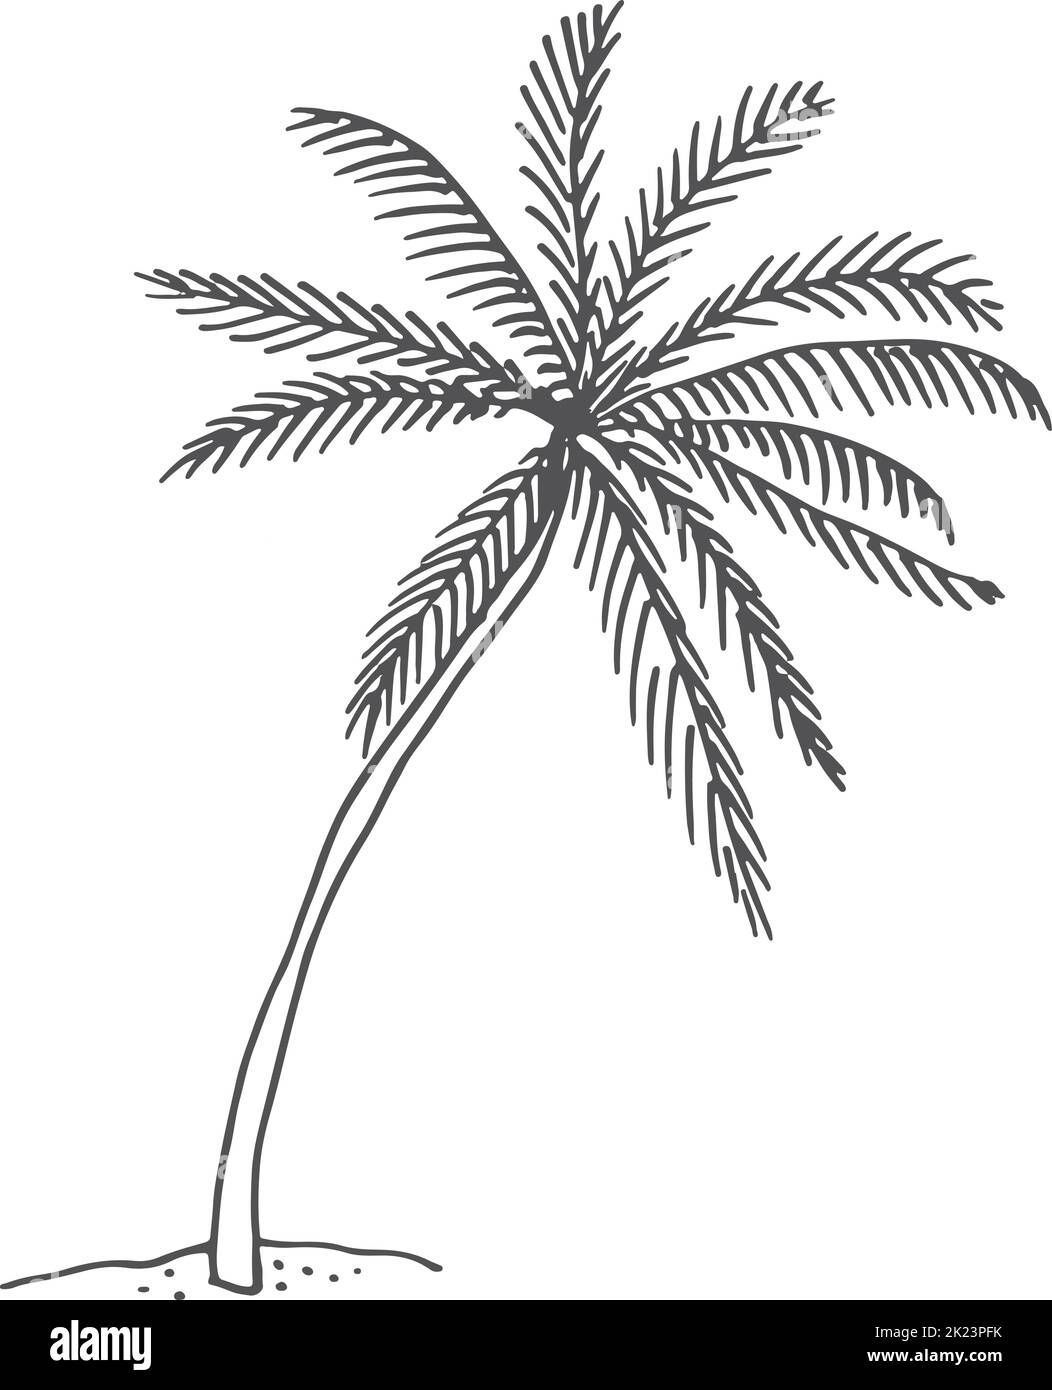 Esquisse de paume. Arbre tropical en pleine croissance de style dessiné à la main Illustration de Vecteur